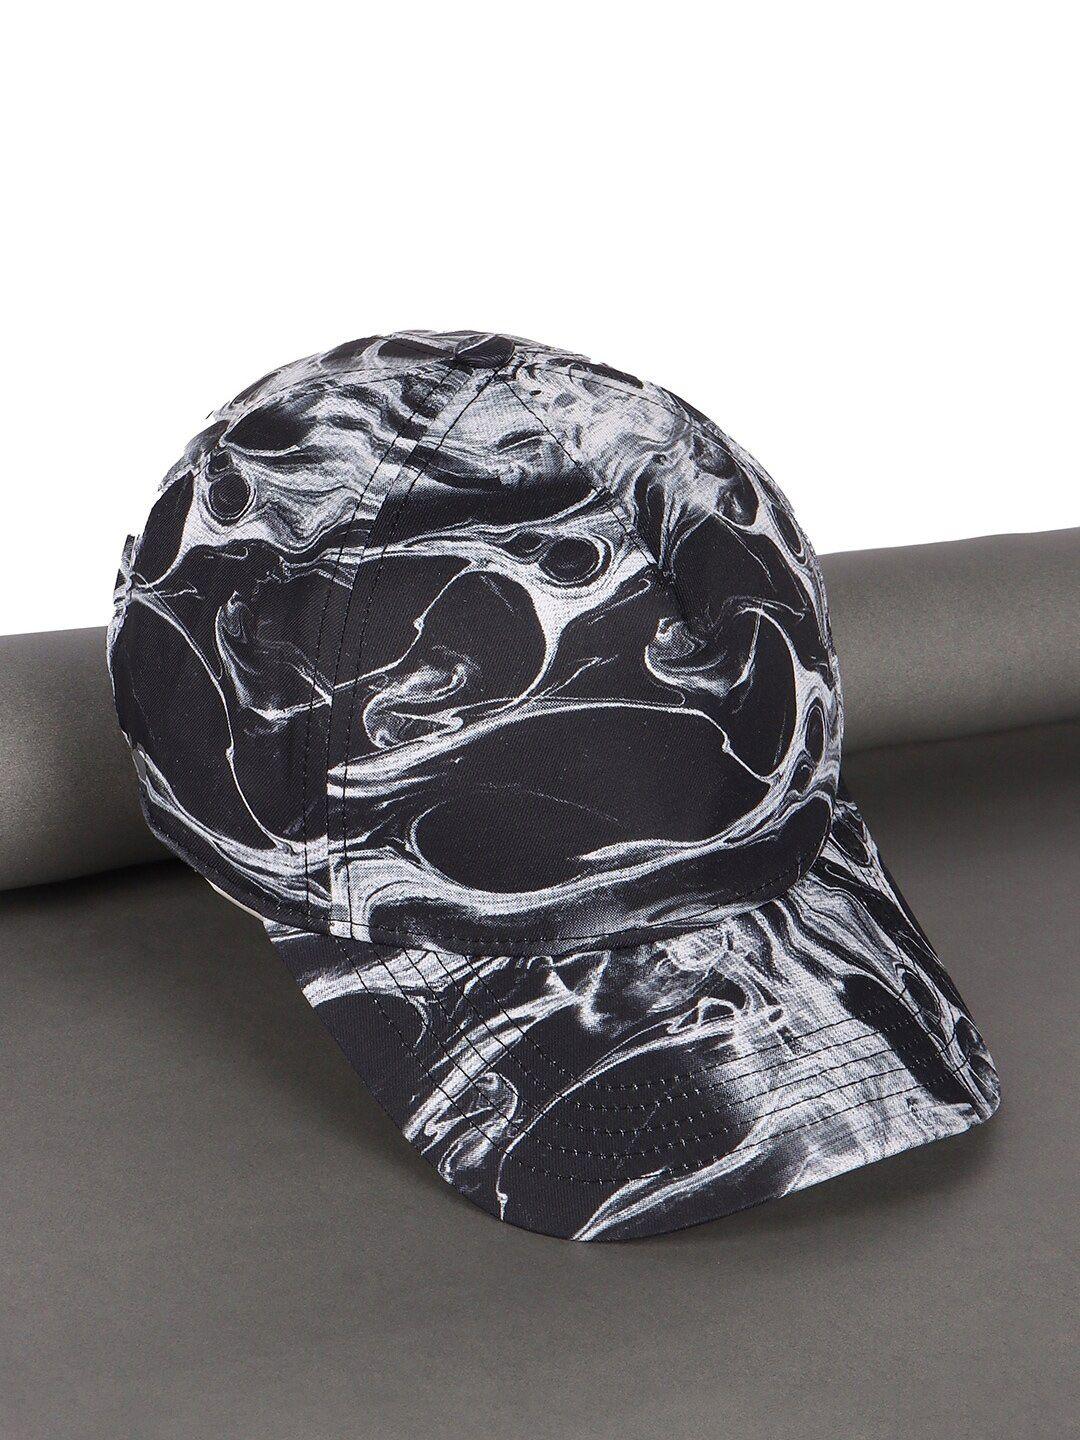 bewakoof unisex smokey printed cotton baseball cap